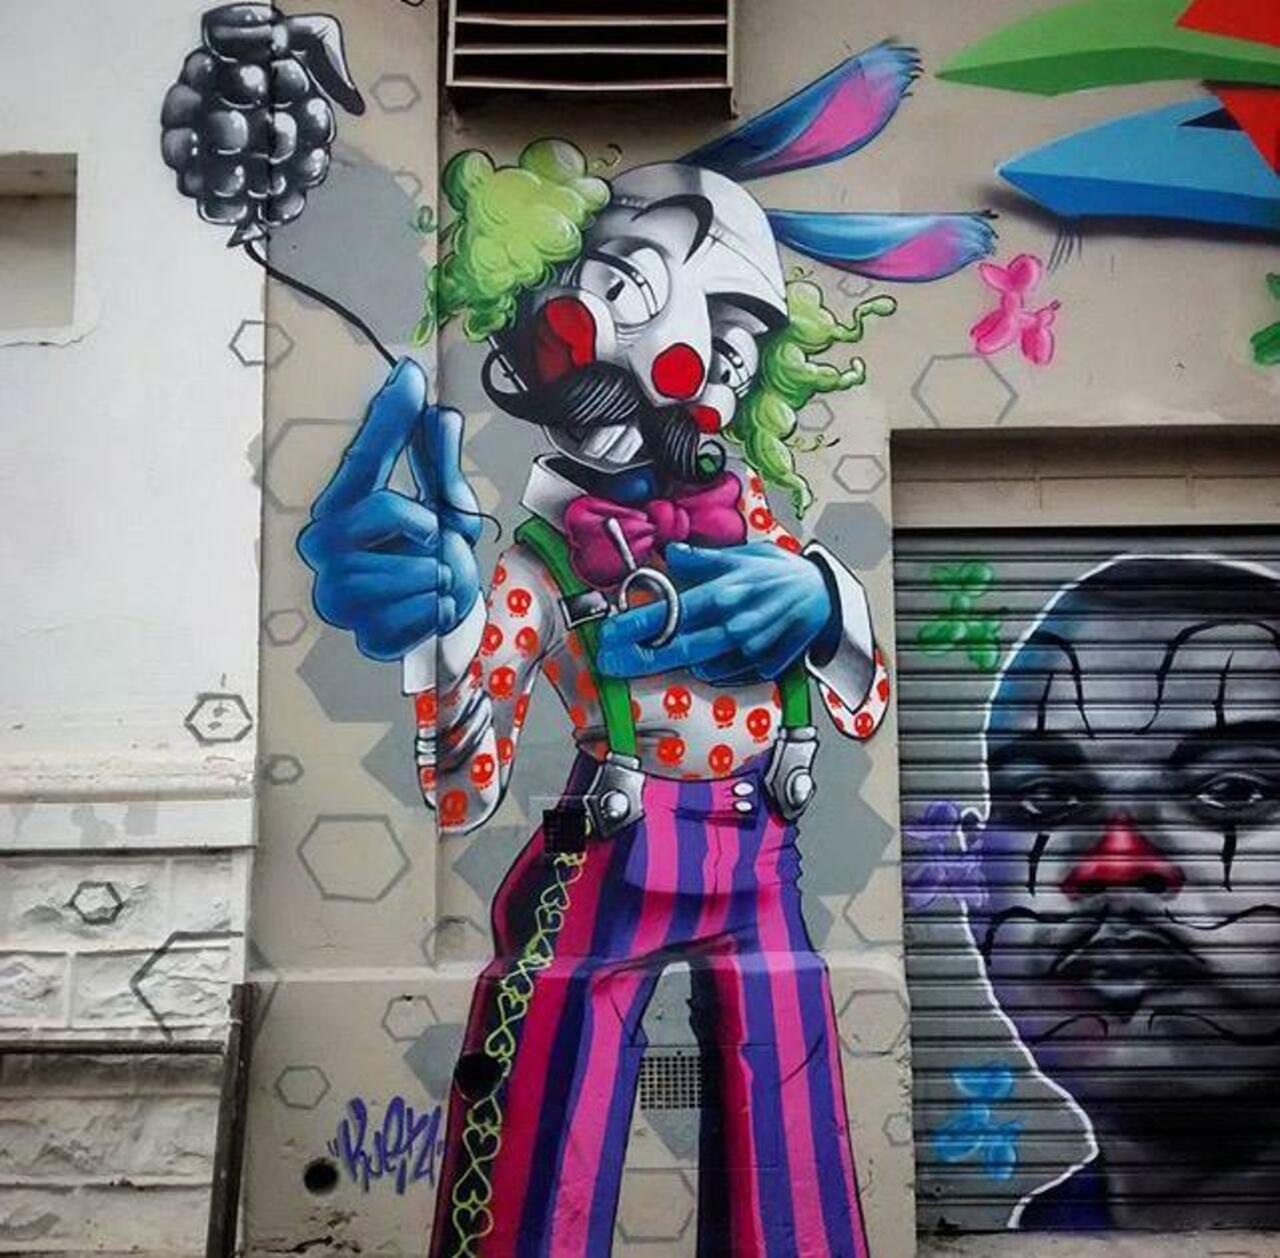 New Street Art by Karen Kueia 

#art #graffiti #mural #streetart http://t.co/tdokEGJi2R